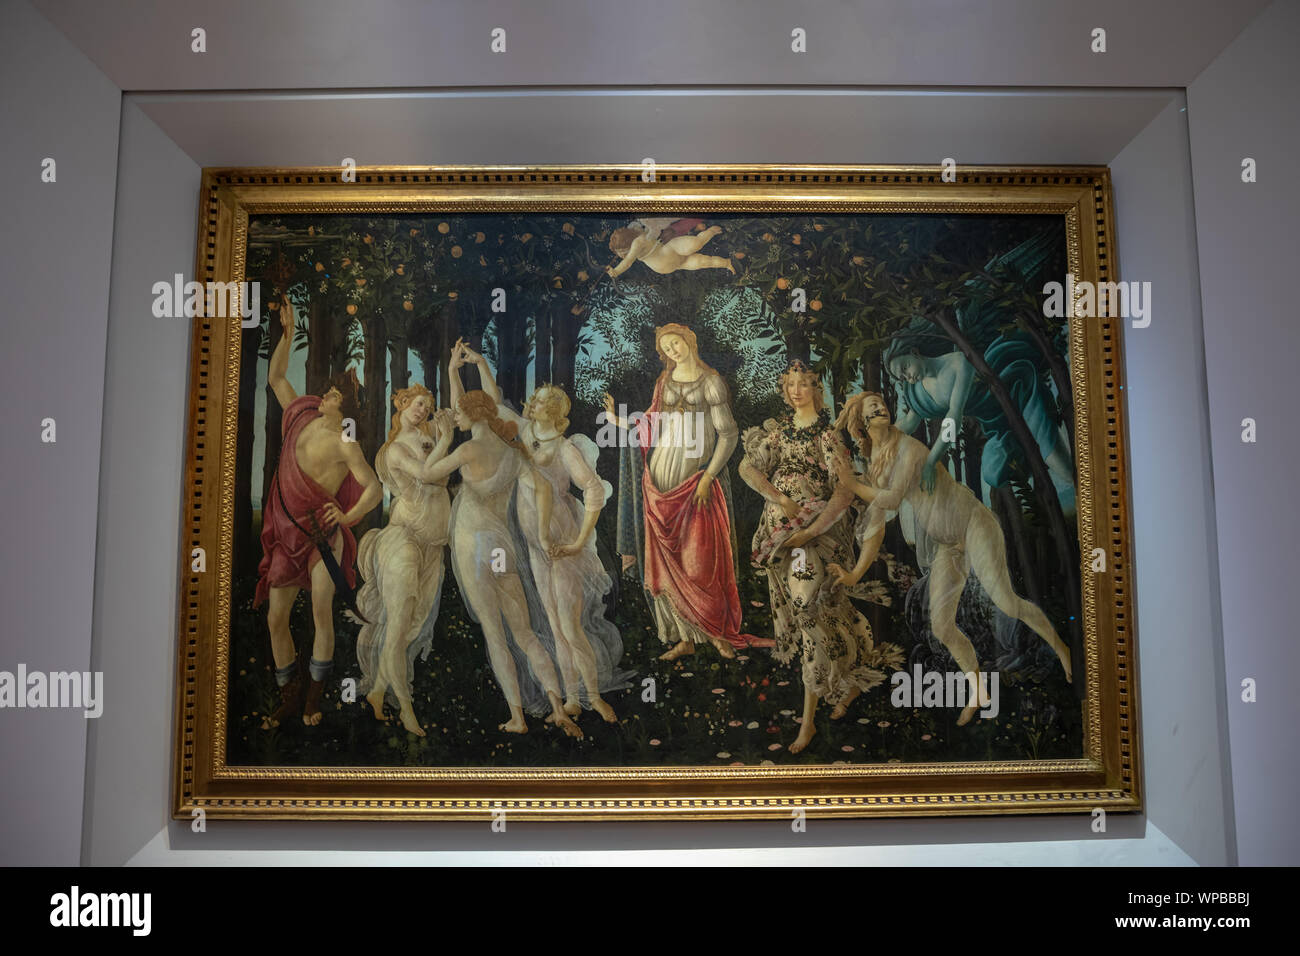 Florence, Italie - 26 juin 2018 : Photo de Primavera (printemps) est la peinture à la détrempe peinture par le peintre italien Sandro Botticelli dans hall o Banque D'Images